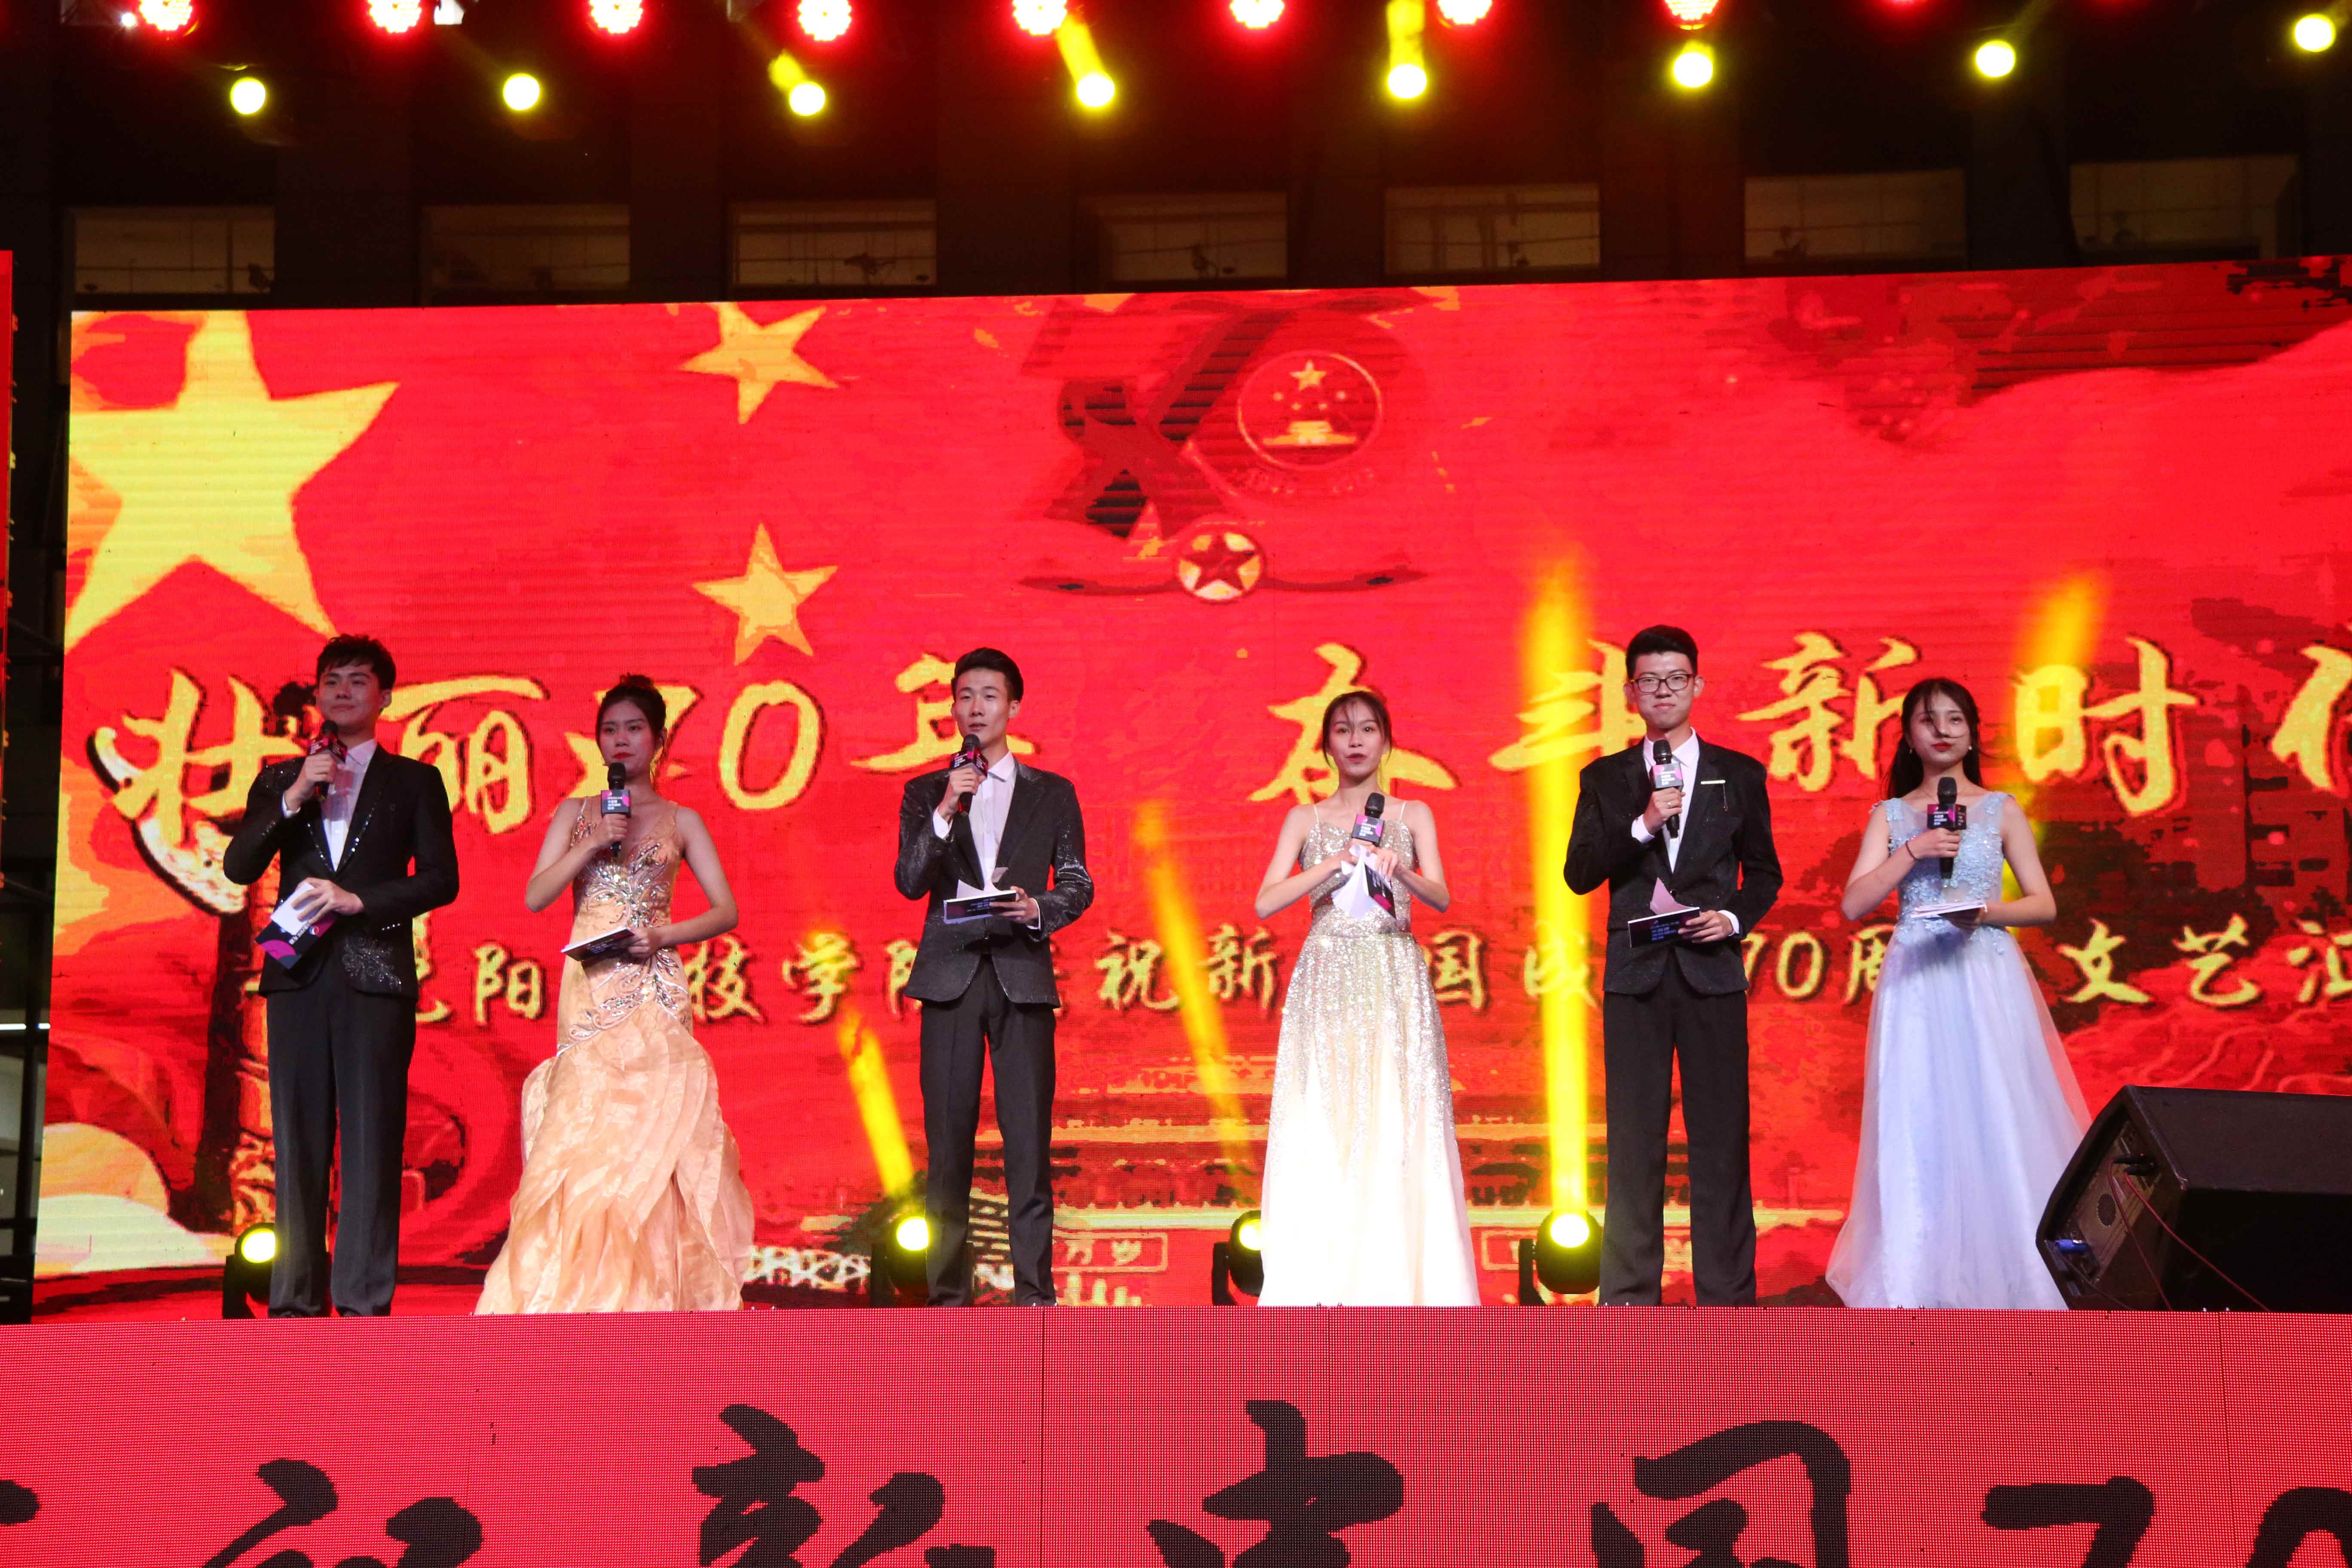 爱体育中国有限公司官网成功举办庆祝新中国成立70周年文艺汇演